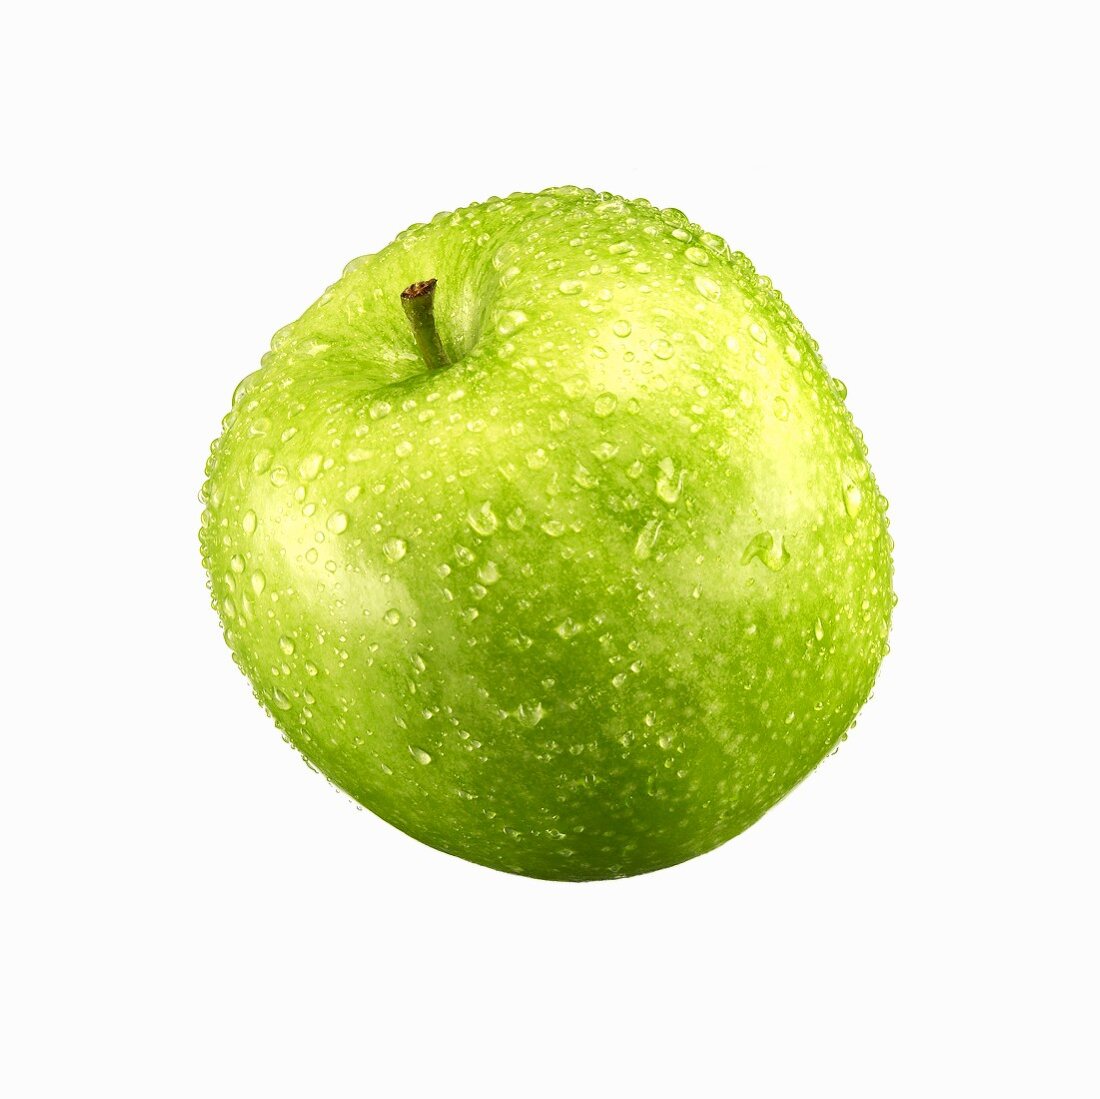 Grüner Apfel mit Wassertropfen